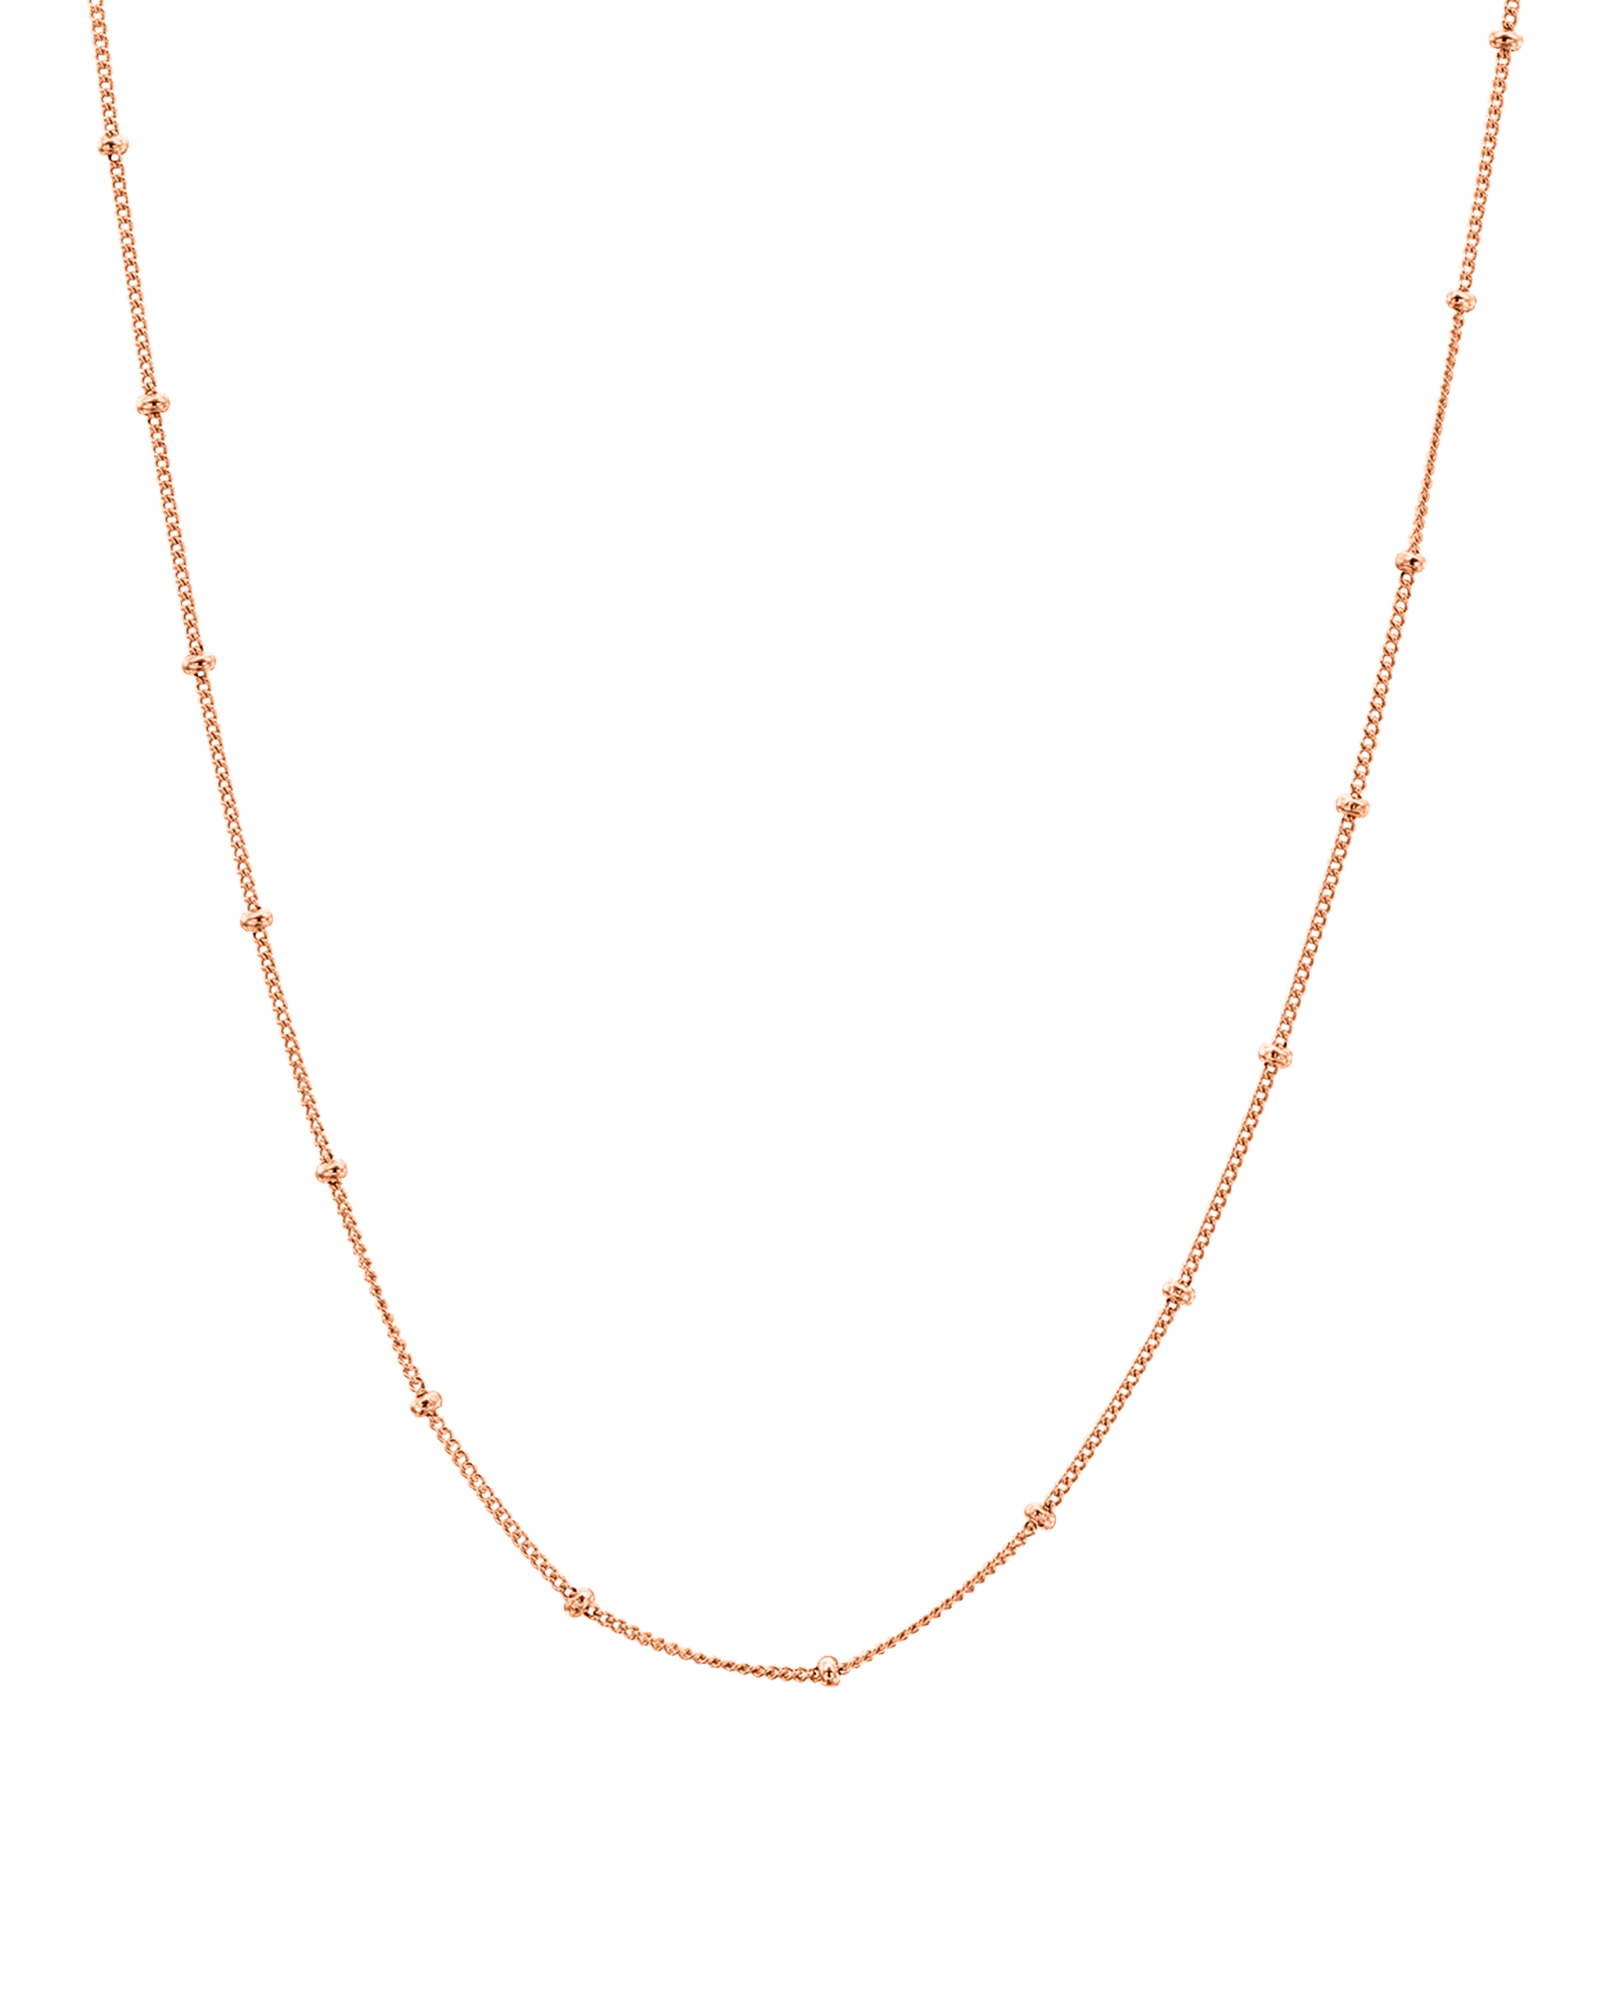 Saturn Chain - 18K Gold Vermeil Chains magal-dev 